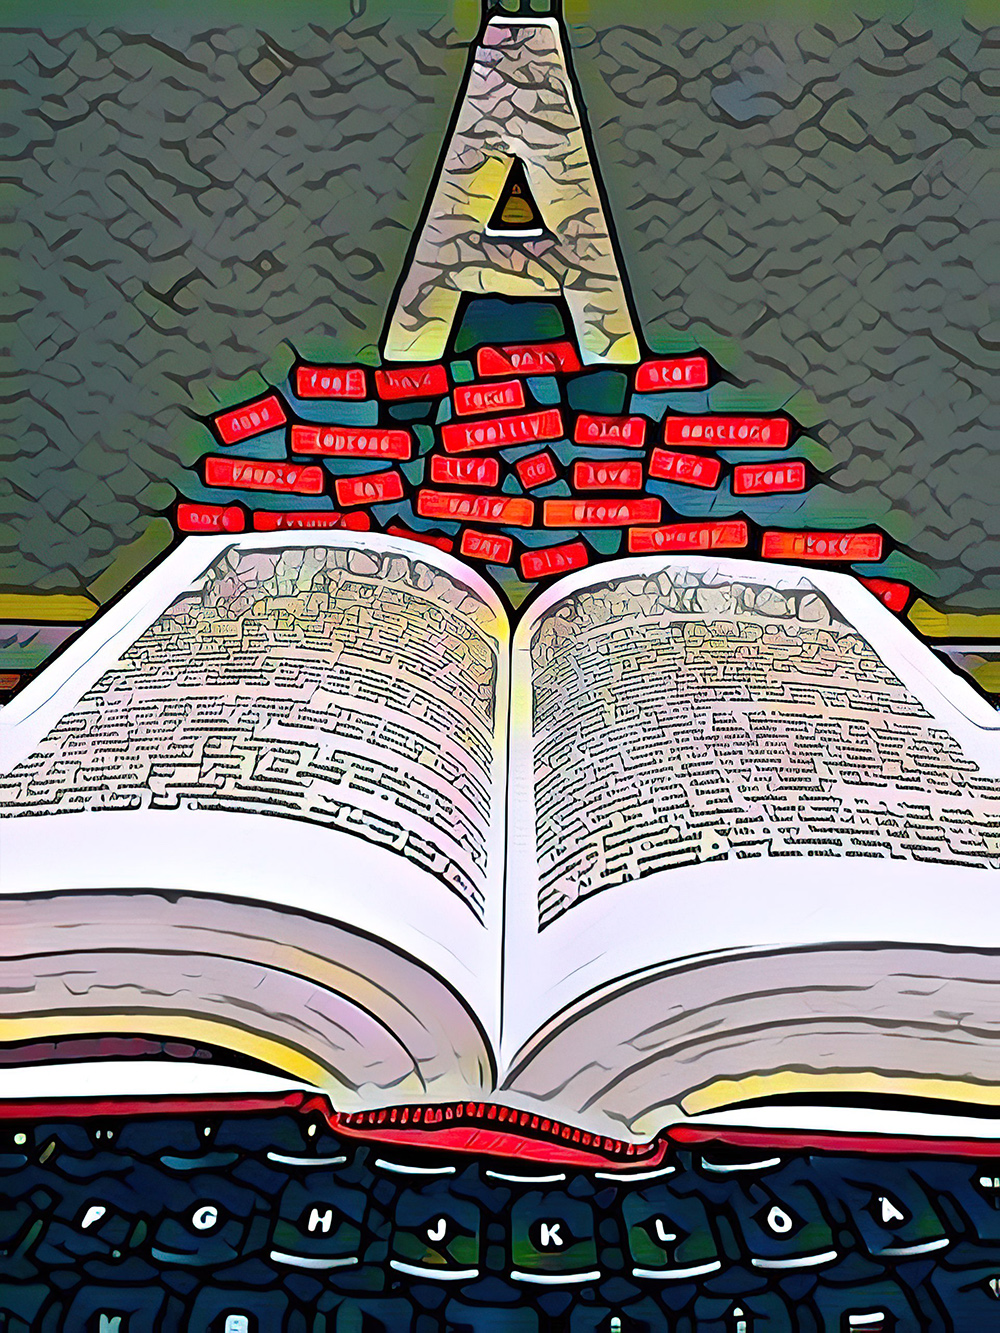 Auf einer schwarzen Tastatur am unteren Bildrand liegt ein aufgeschlagenes Buch, darüber schweben rote Wörter in Form von Etiketten, über denen der Buchstabe A schwebt.